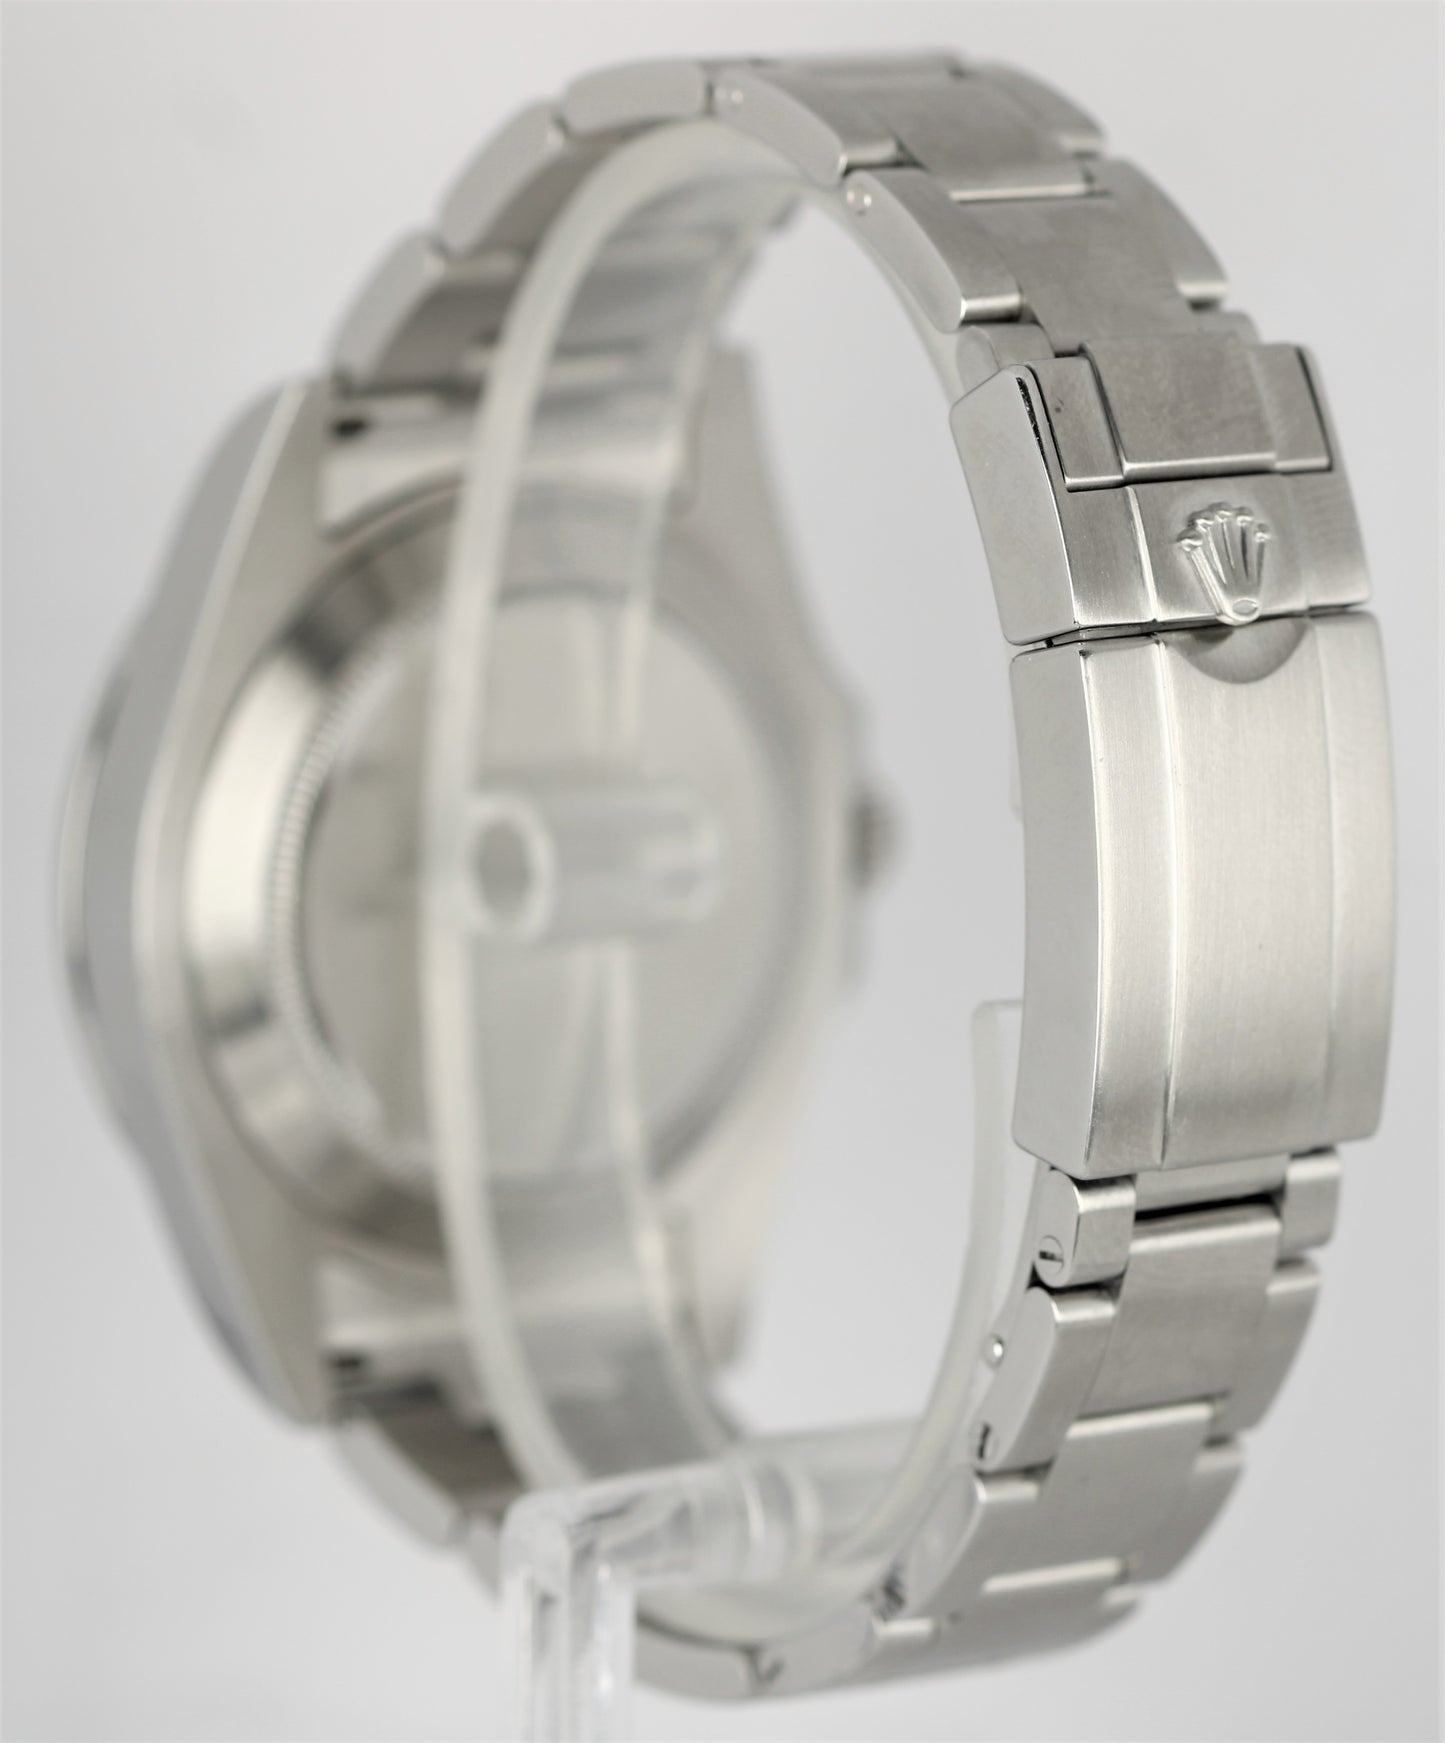 Rolex Explorer II Date Stainless Steel ORANGE Polar White 42mm 216570 Watch